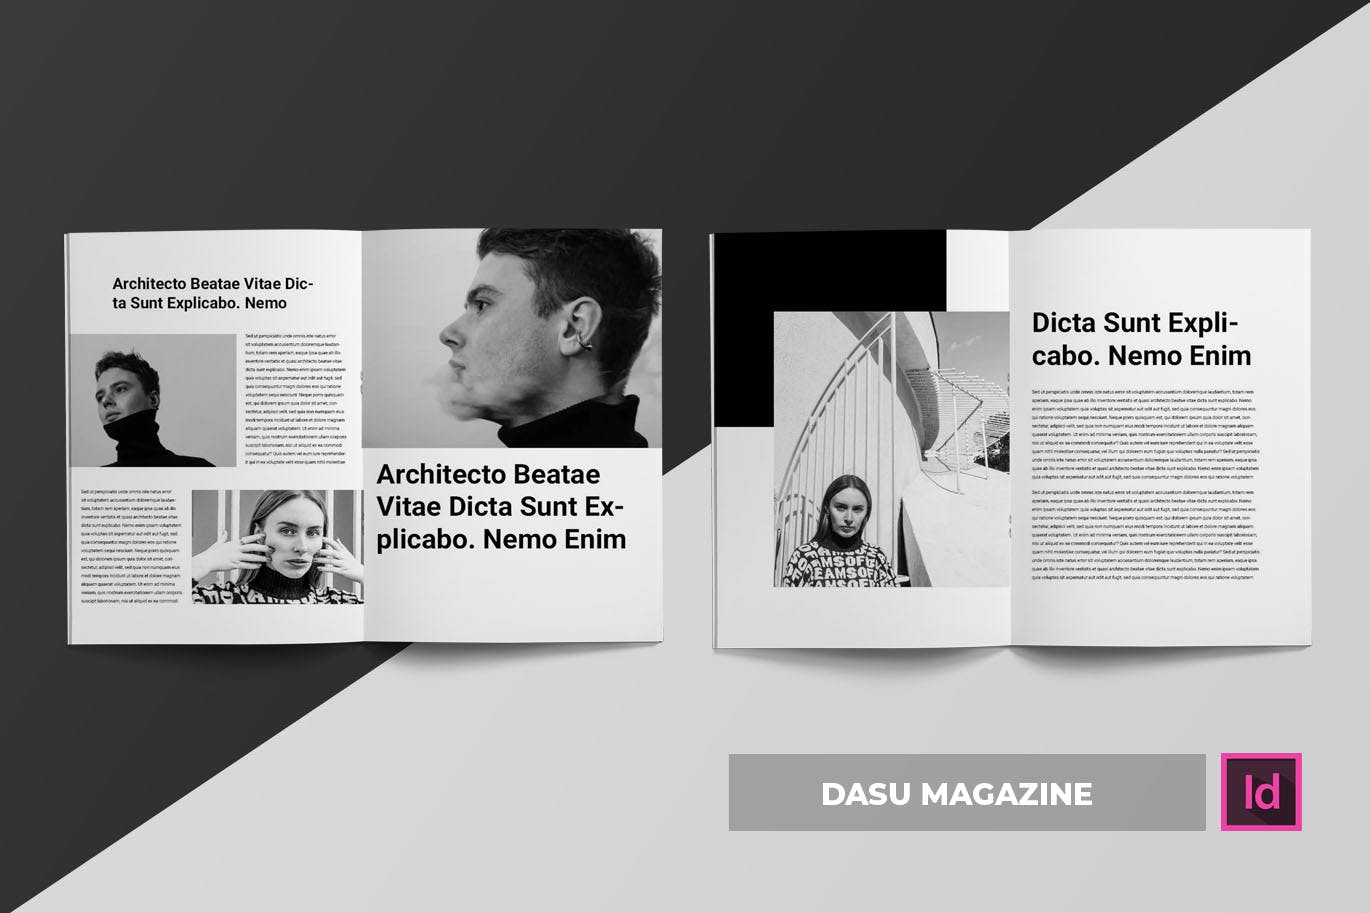 摄影艺术/时装设计主题蚂蚁素材精选杂志排版设计模板 Dasu | Magazine Template插图(2)